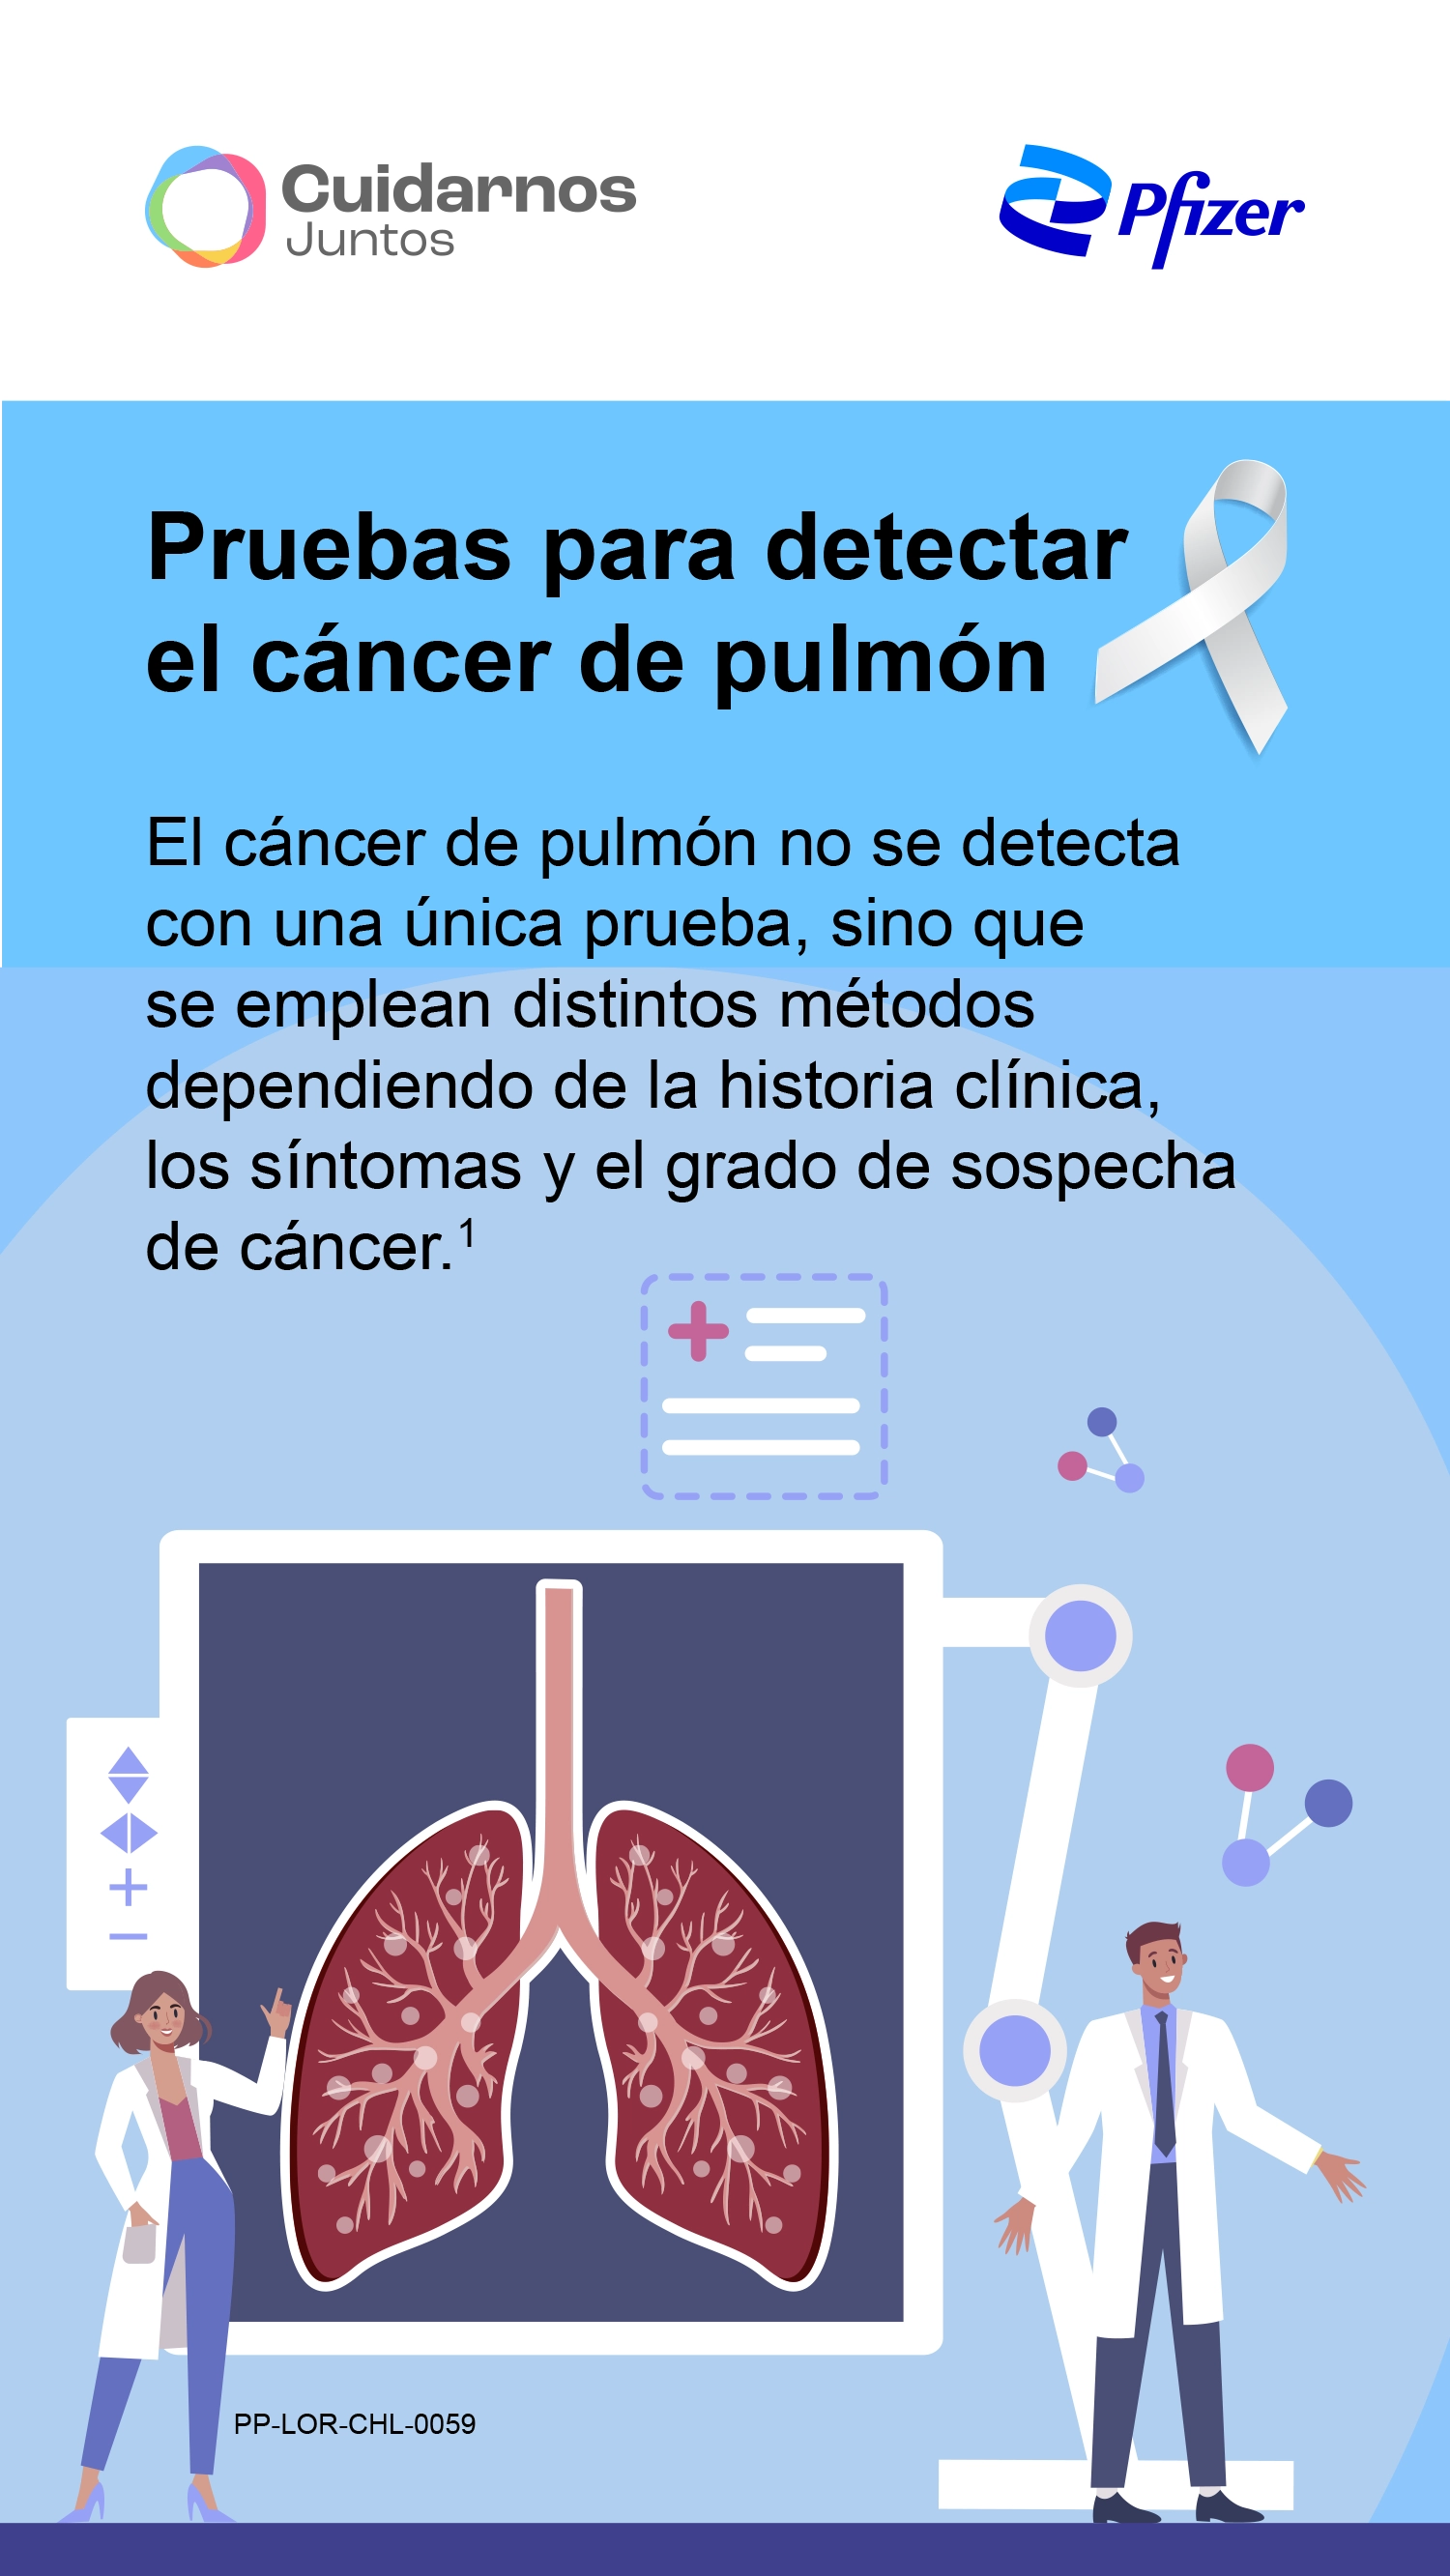 Pruebas para detectar el cáncer de pulmón